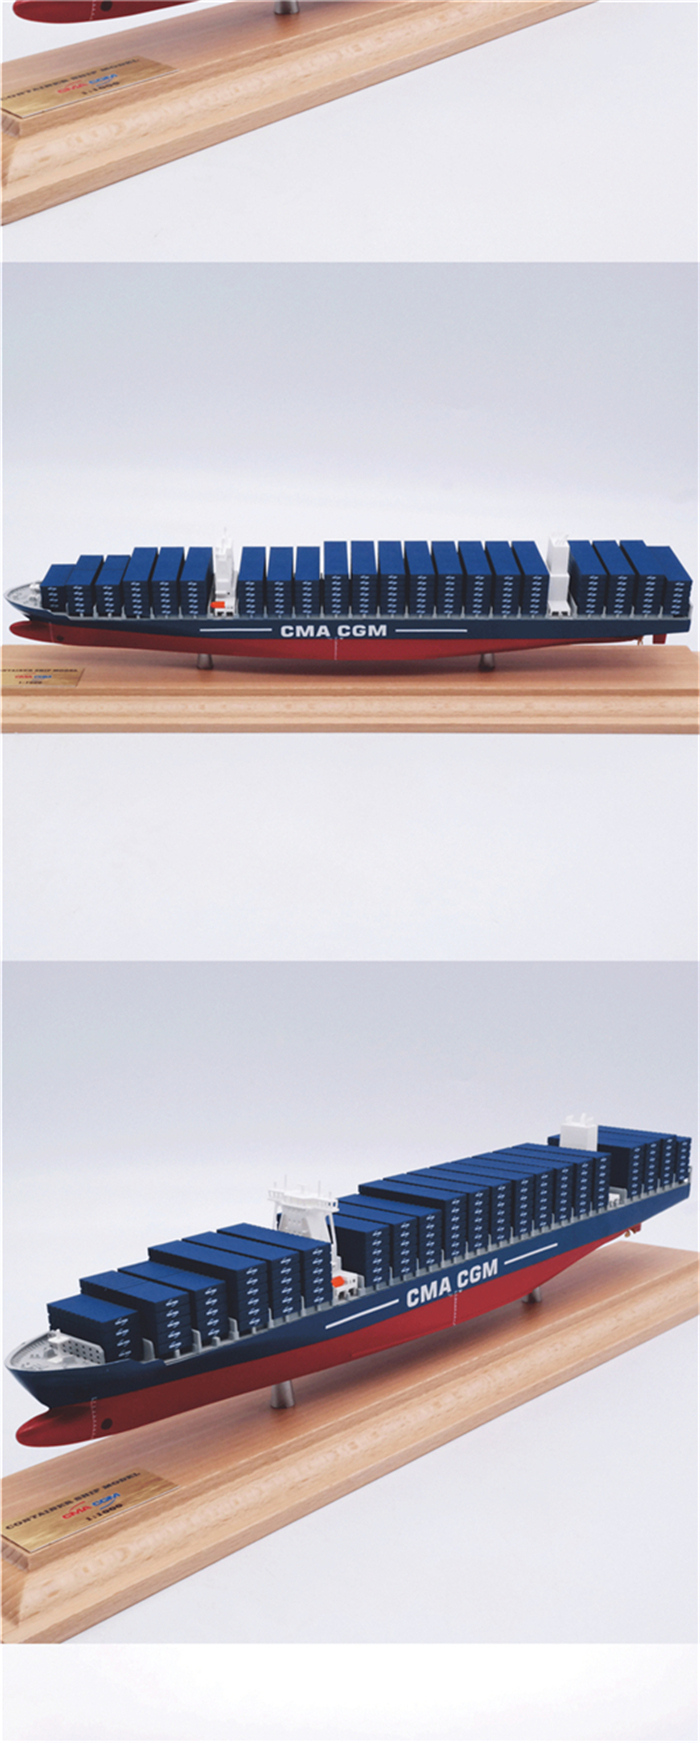 海艺坊批量定制各种集装箱货柜船模型礼品船模：展示用货柜船模型LOGO定制，展示用货柜船模型订制订做，展示用货柜船模型定制颜色